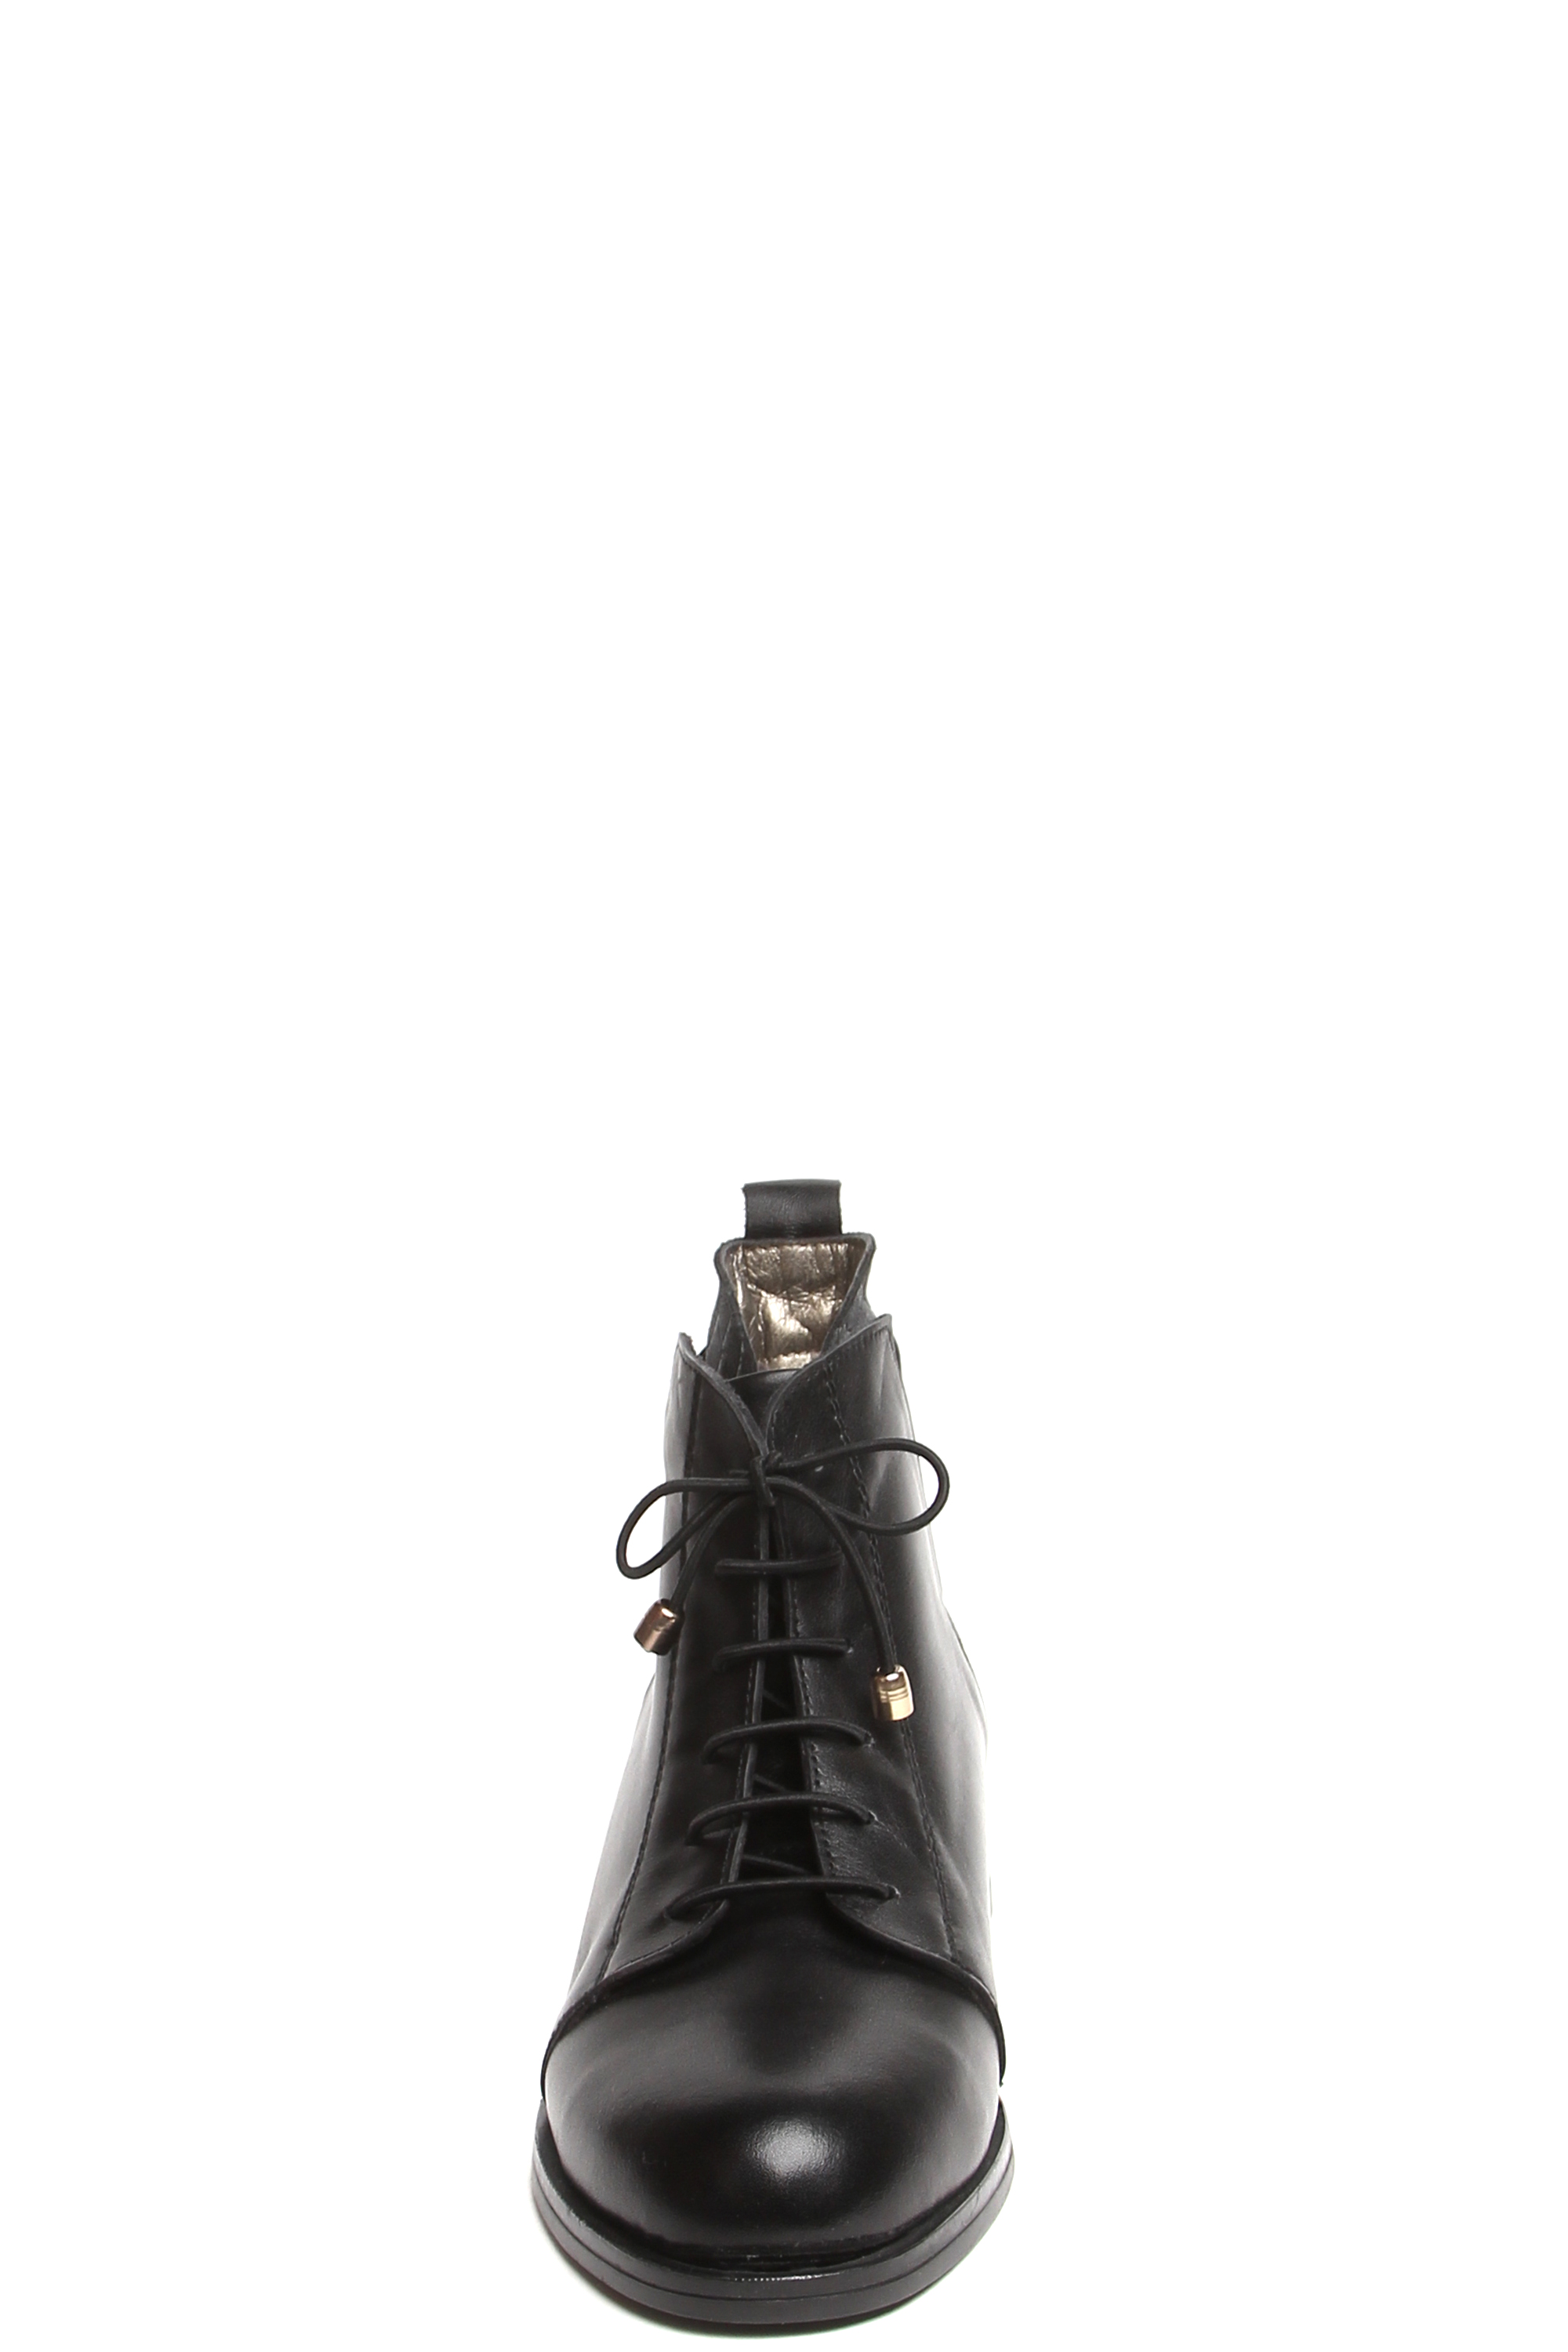 Ботинки MILANA 182696-2-110V черный - купить 8990